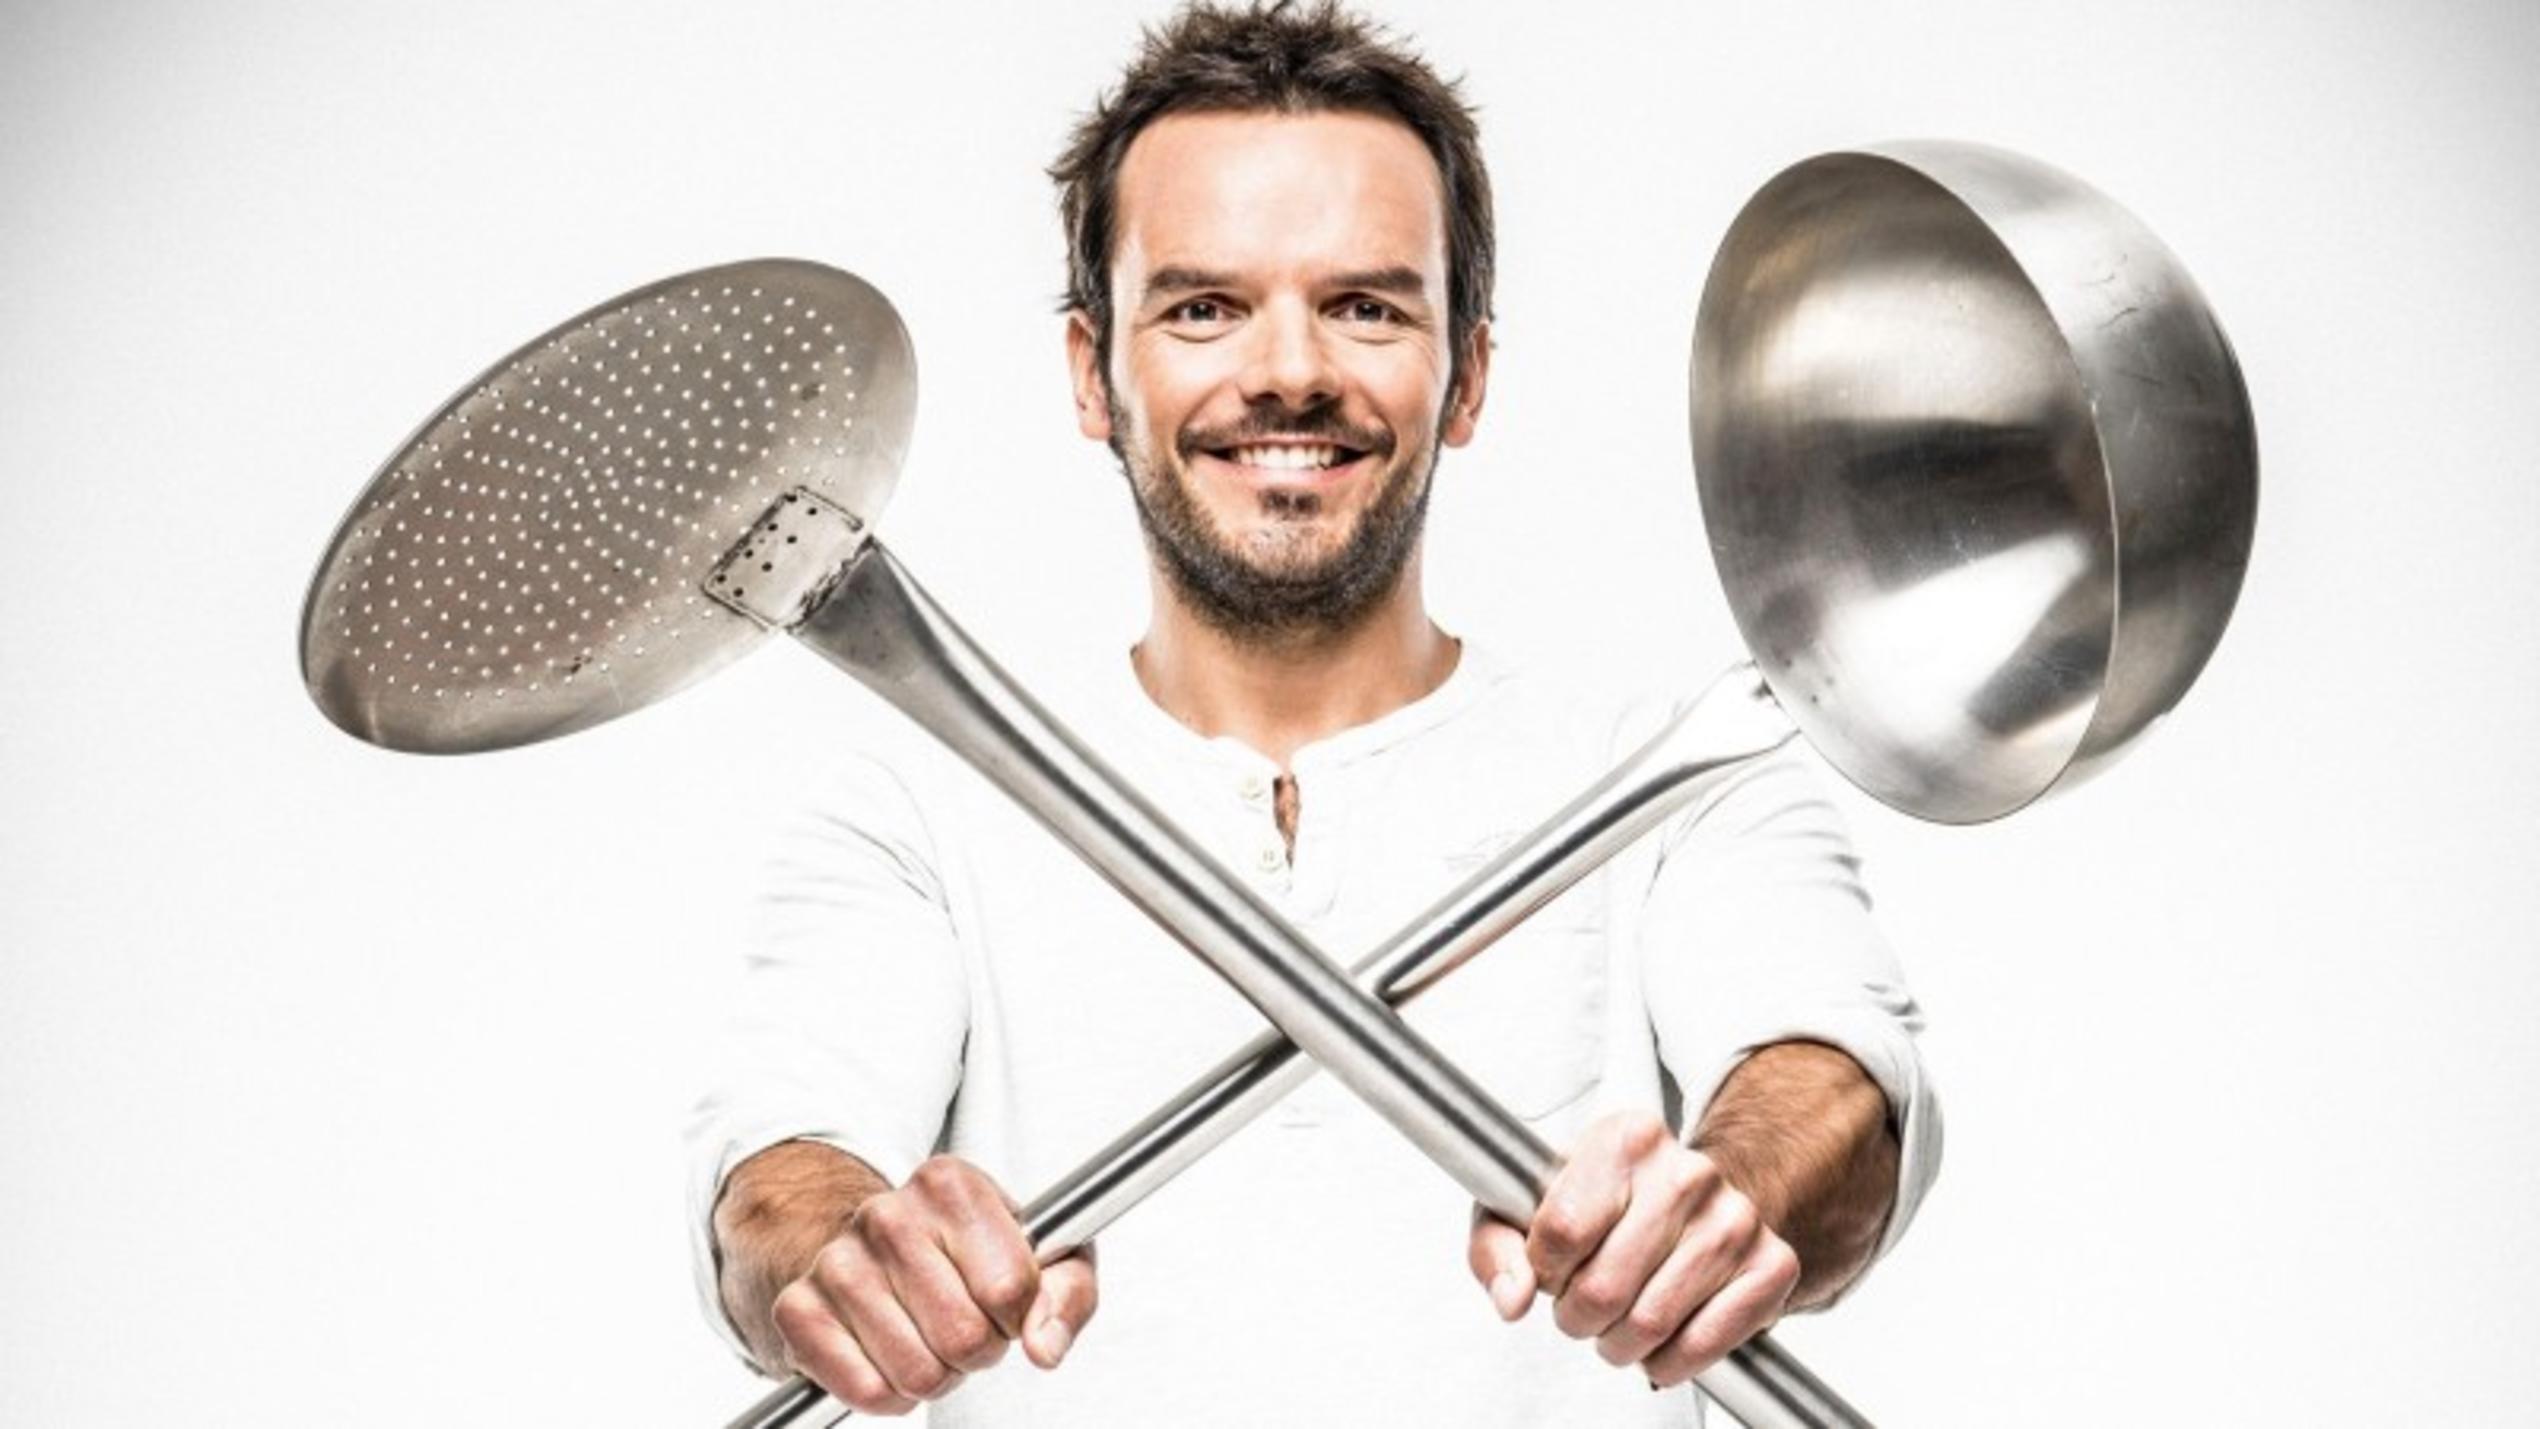 TV-Koch Steffen Henssler tritt beim "Grill den Profi Sommerspecial" gegen prominente Hobby-Griller an.